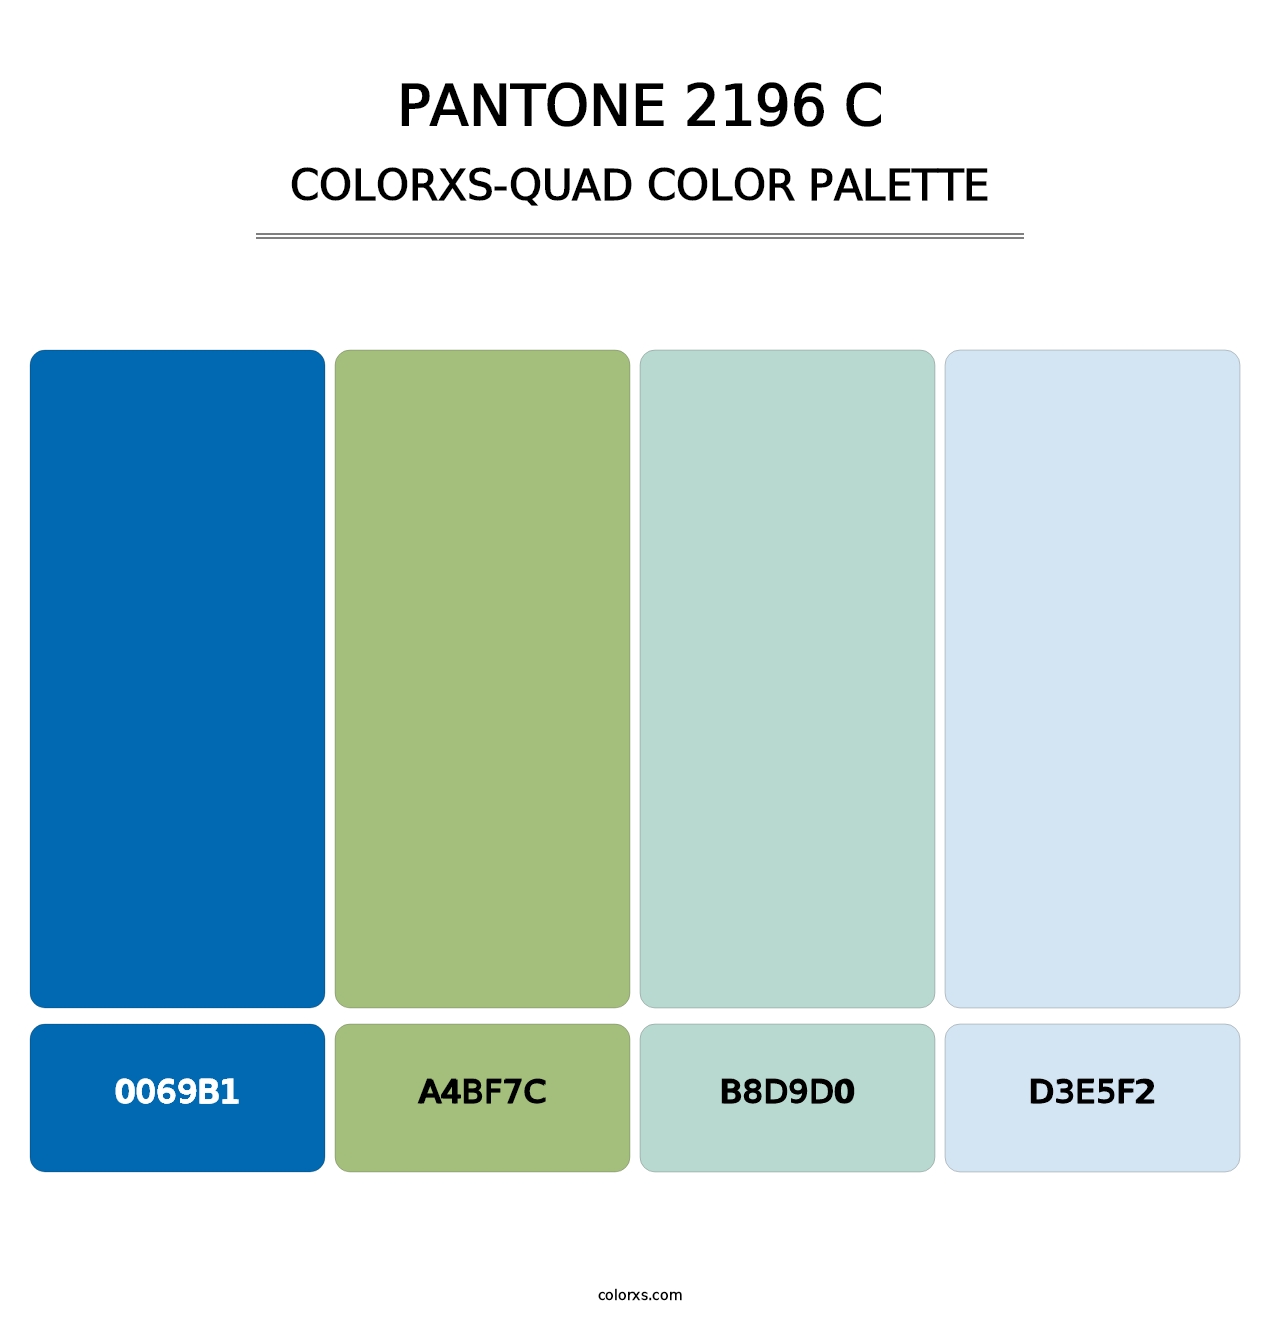 PANTONE 2196 C - Colorxs Quad Palette